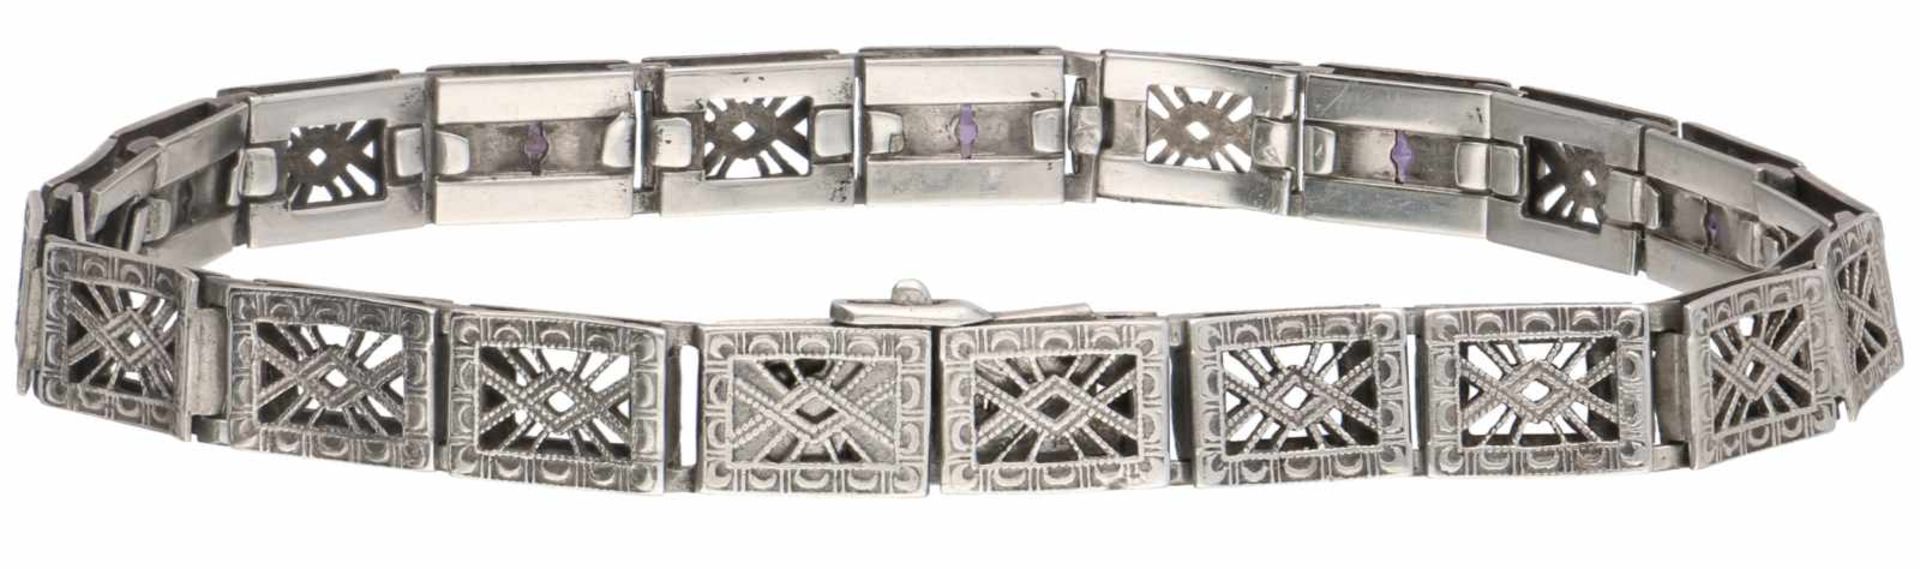 Zilveren filigrain armband, amethist - 925/1000.Keuren: Simmons Pat. Apld For, sterling. Met - Bild 2 aus 2